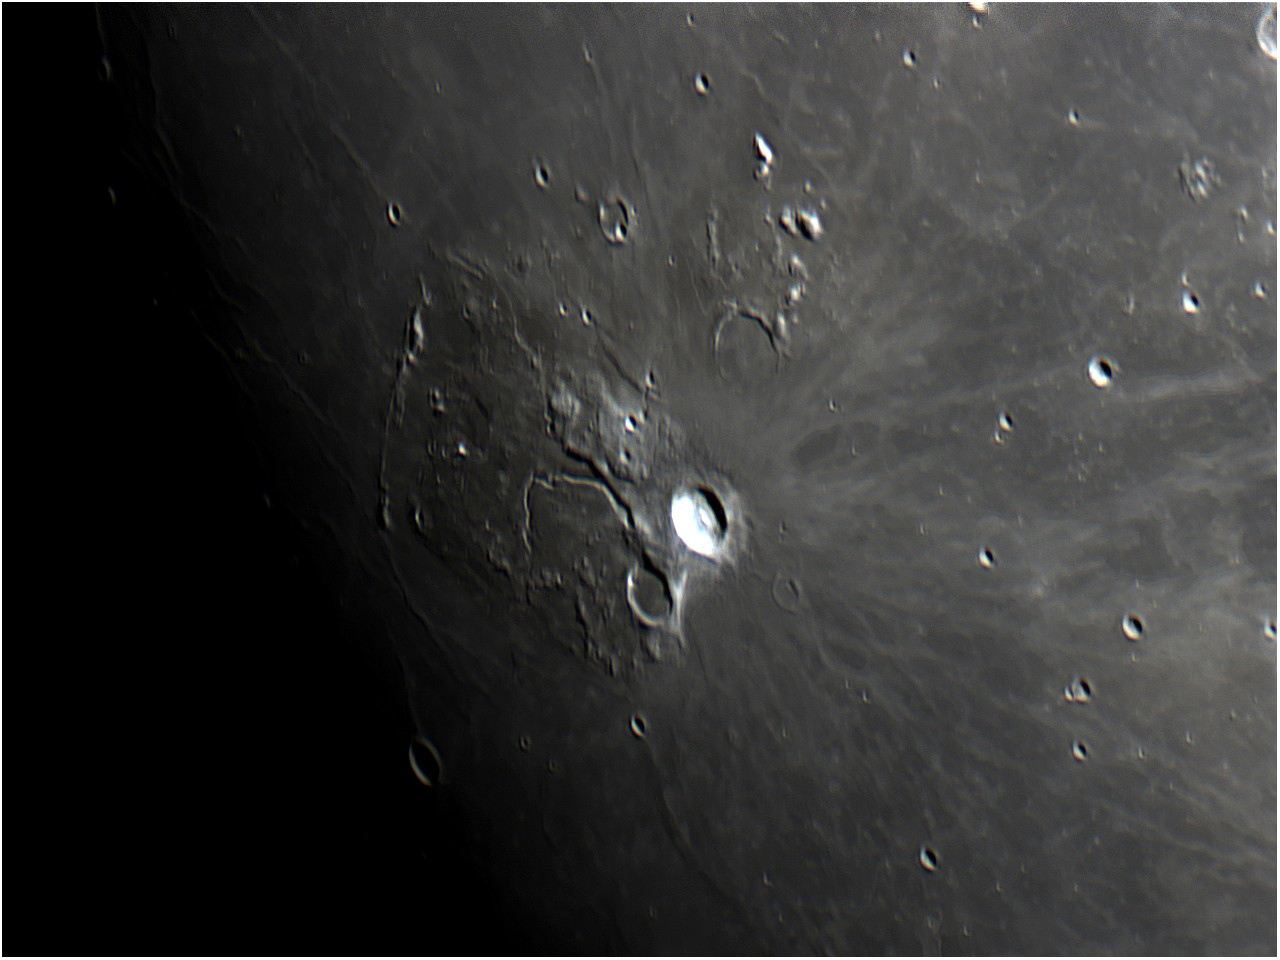 Cratera Aristarchus